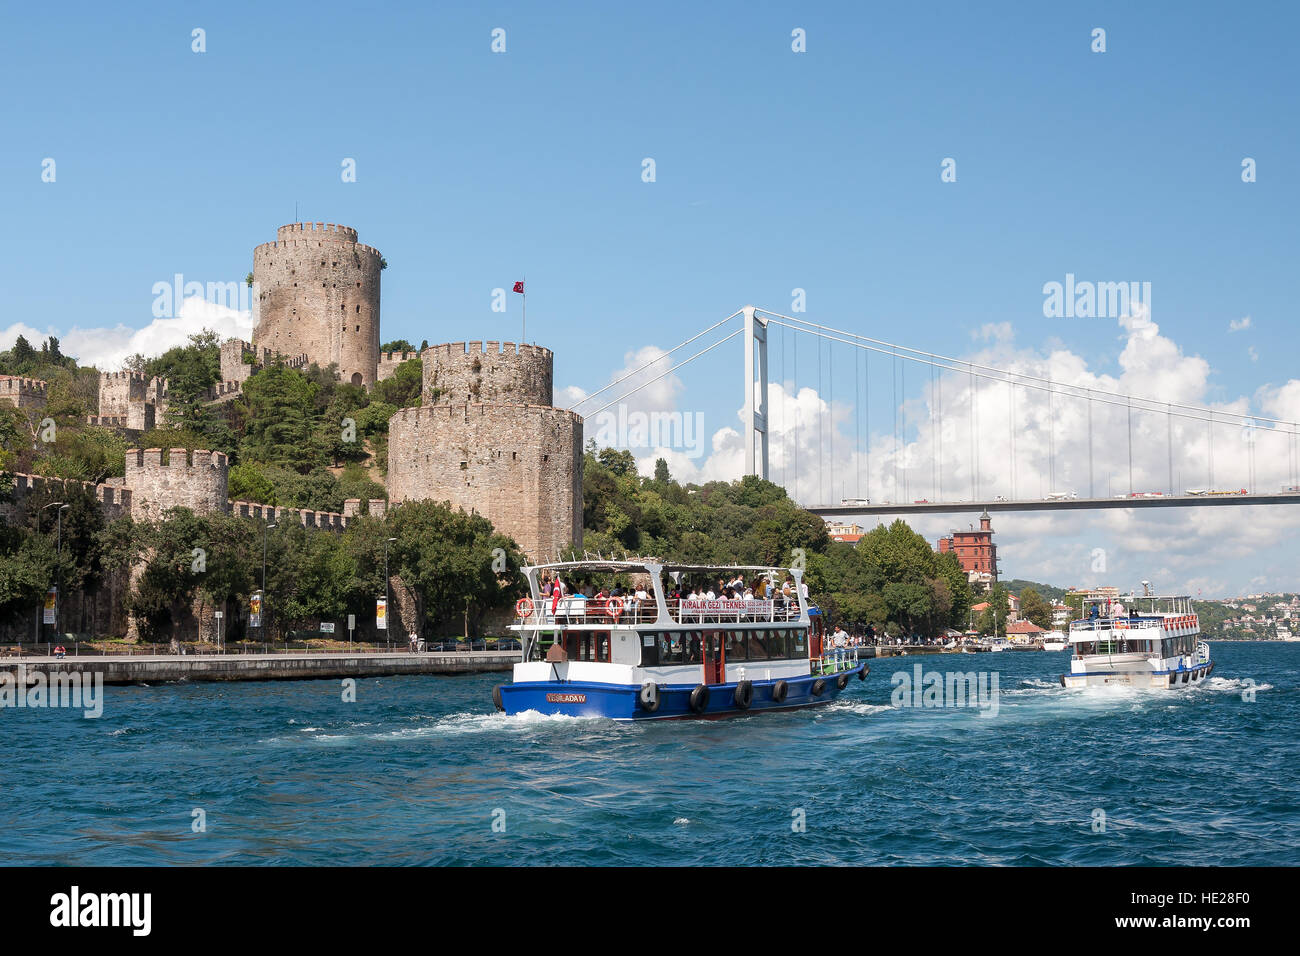 Navi da crociera al Bosforo stretto con Fatih Sultan Mehmet e Fortezza di Rumeli Hisari, Istanbul, Turchia, Medio Oriente Foto Stock